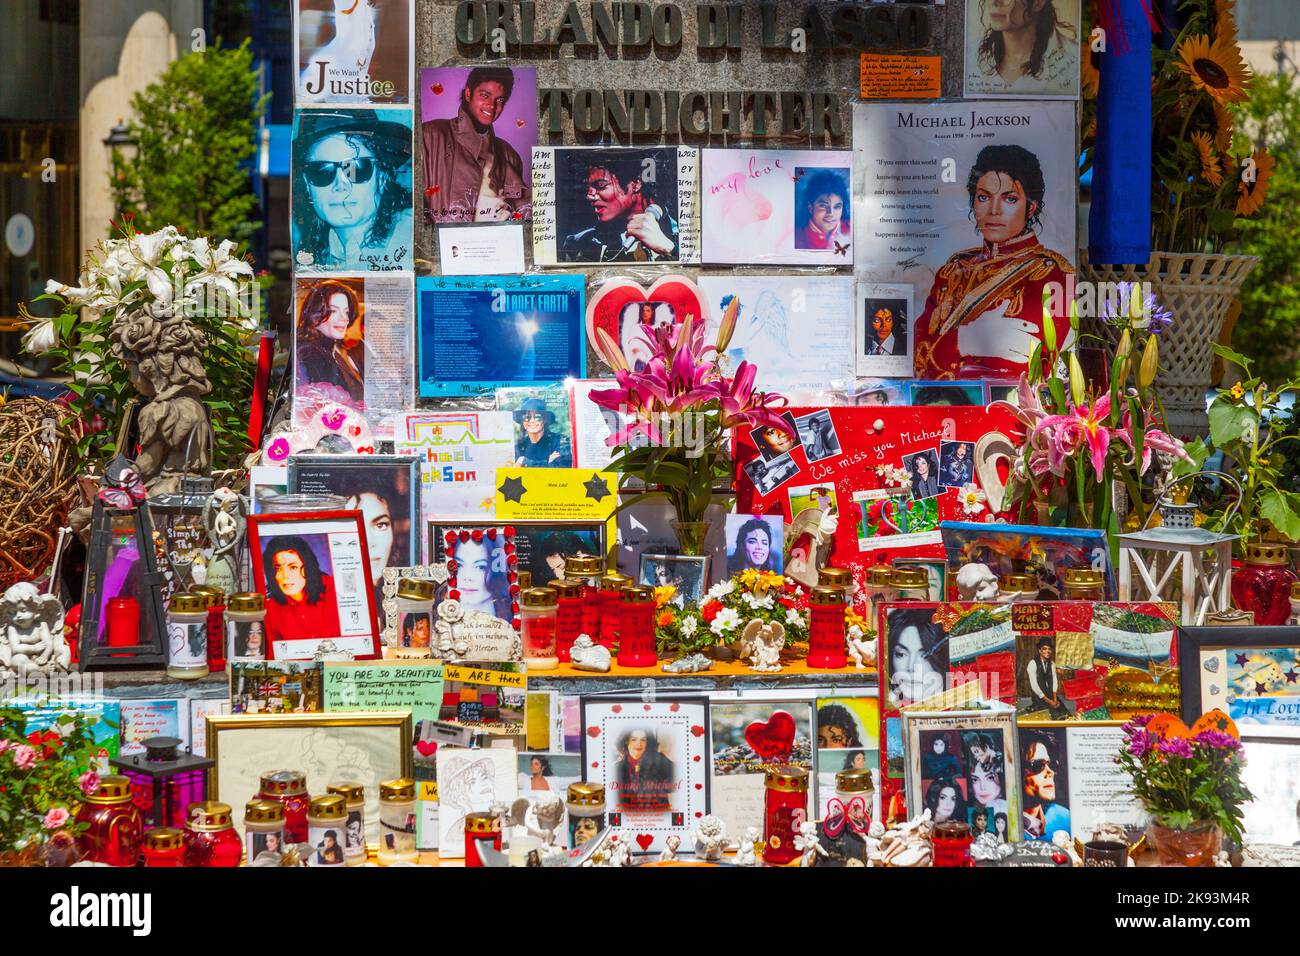 MUNICH, ALLEMAGNE - JUILLET 09 : les gens se souviennent de Michael Jackson avec des cartes postales et des lettres personnelles à la statue d'Orlando di Lasso sur 09 juillet,2011 in Banque D'Images